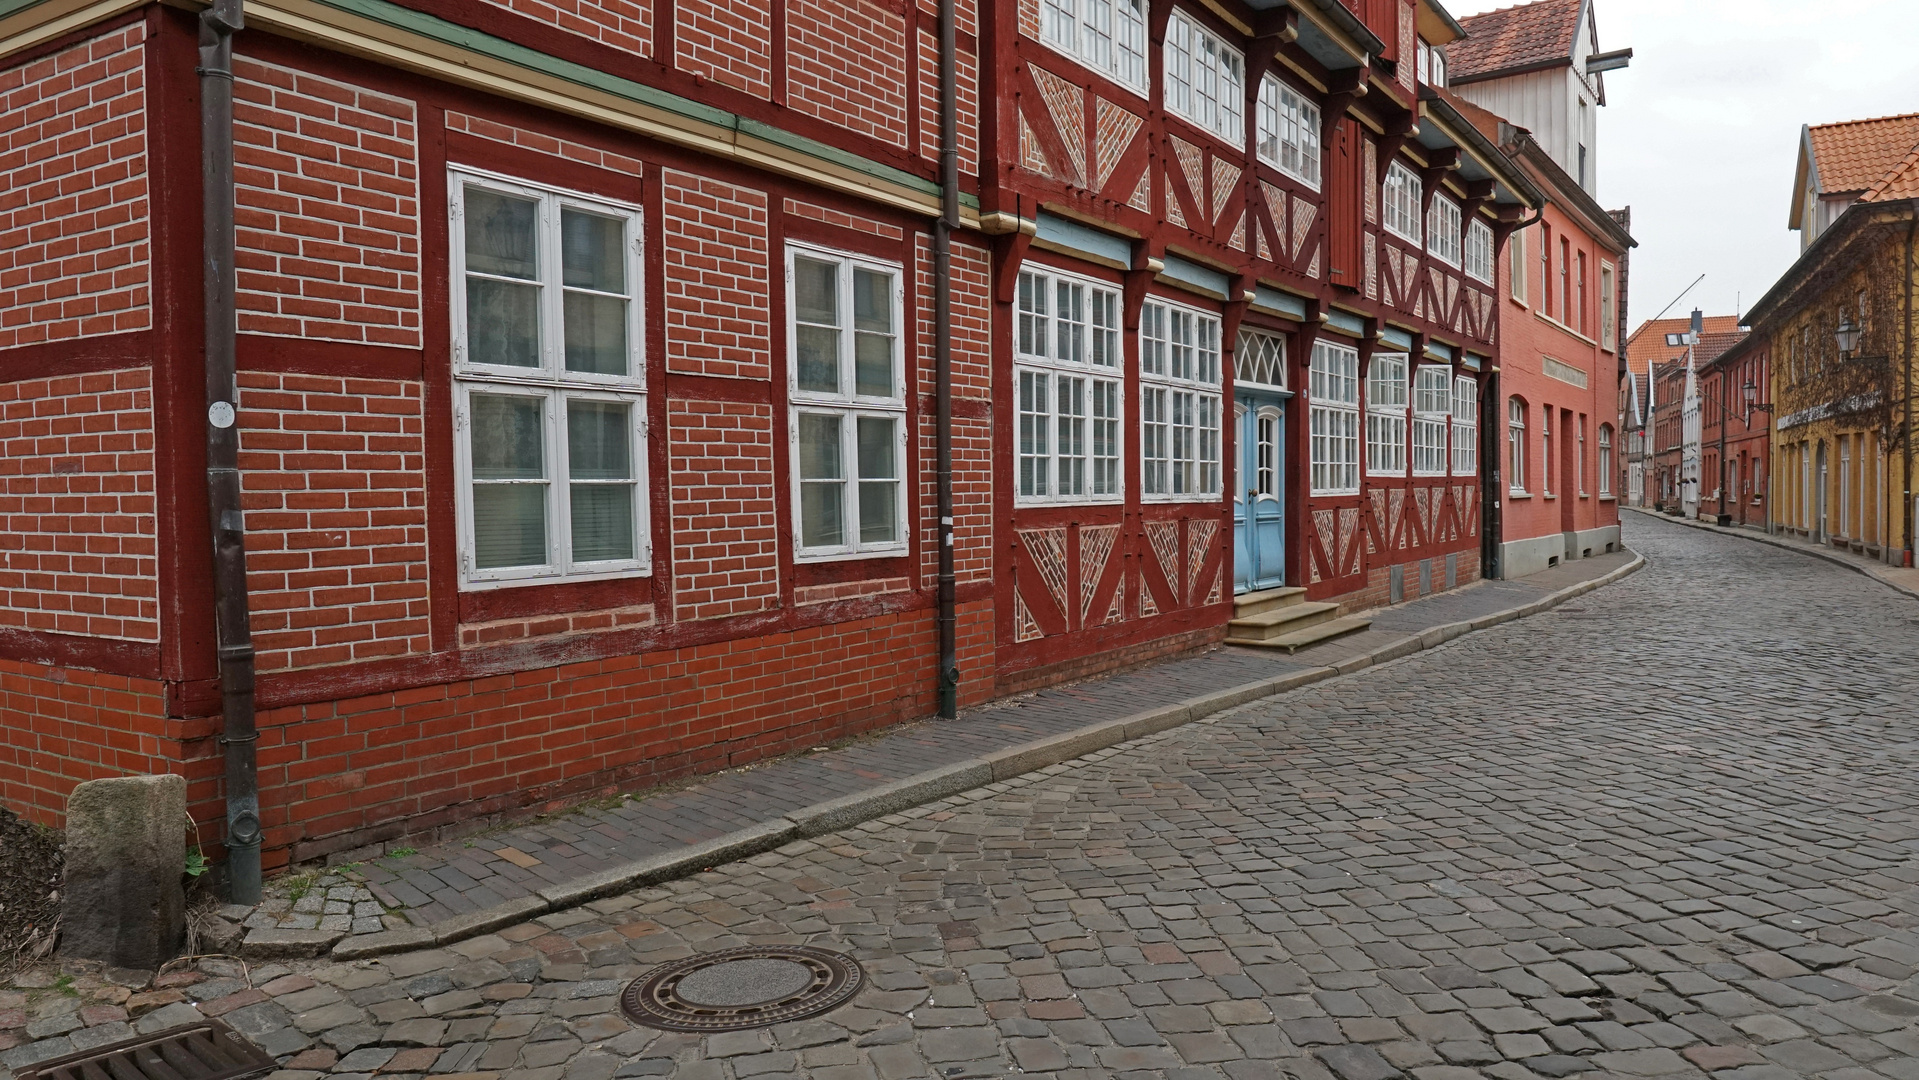 Lauenburg Altstadt im Winterschlaf